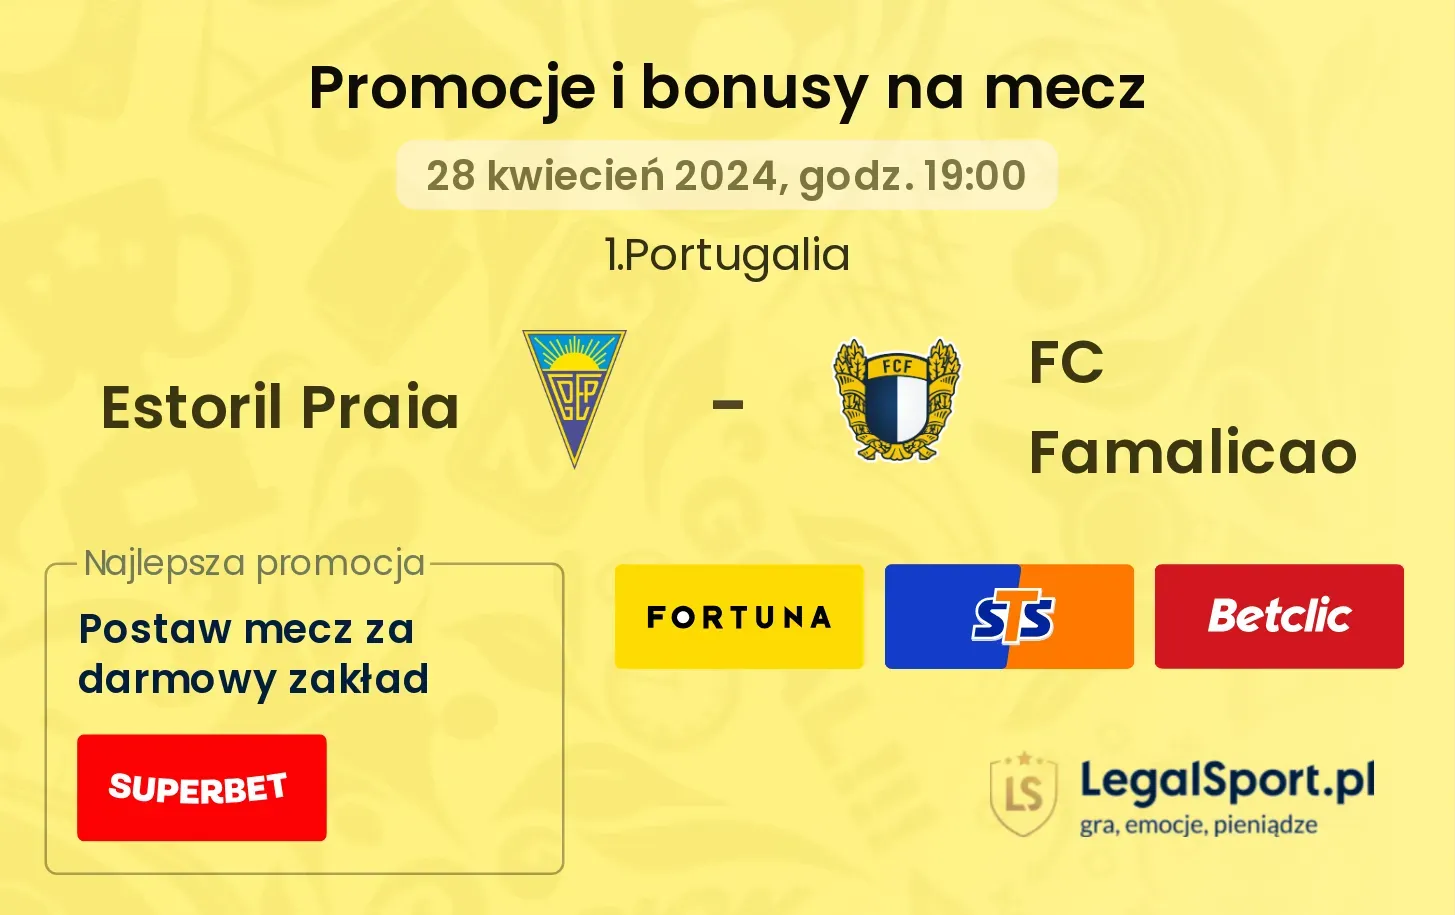 Estoril Praia - FC Famalicao promocje bonusy na mecz